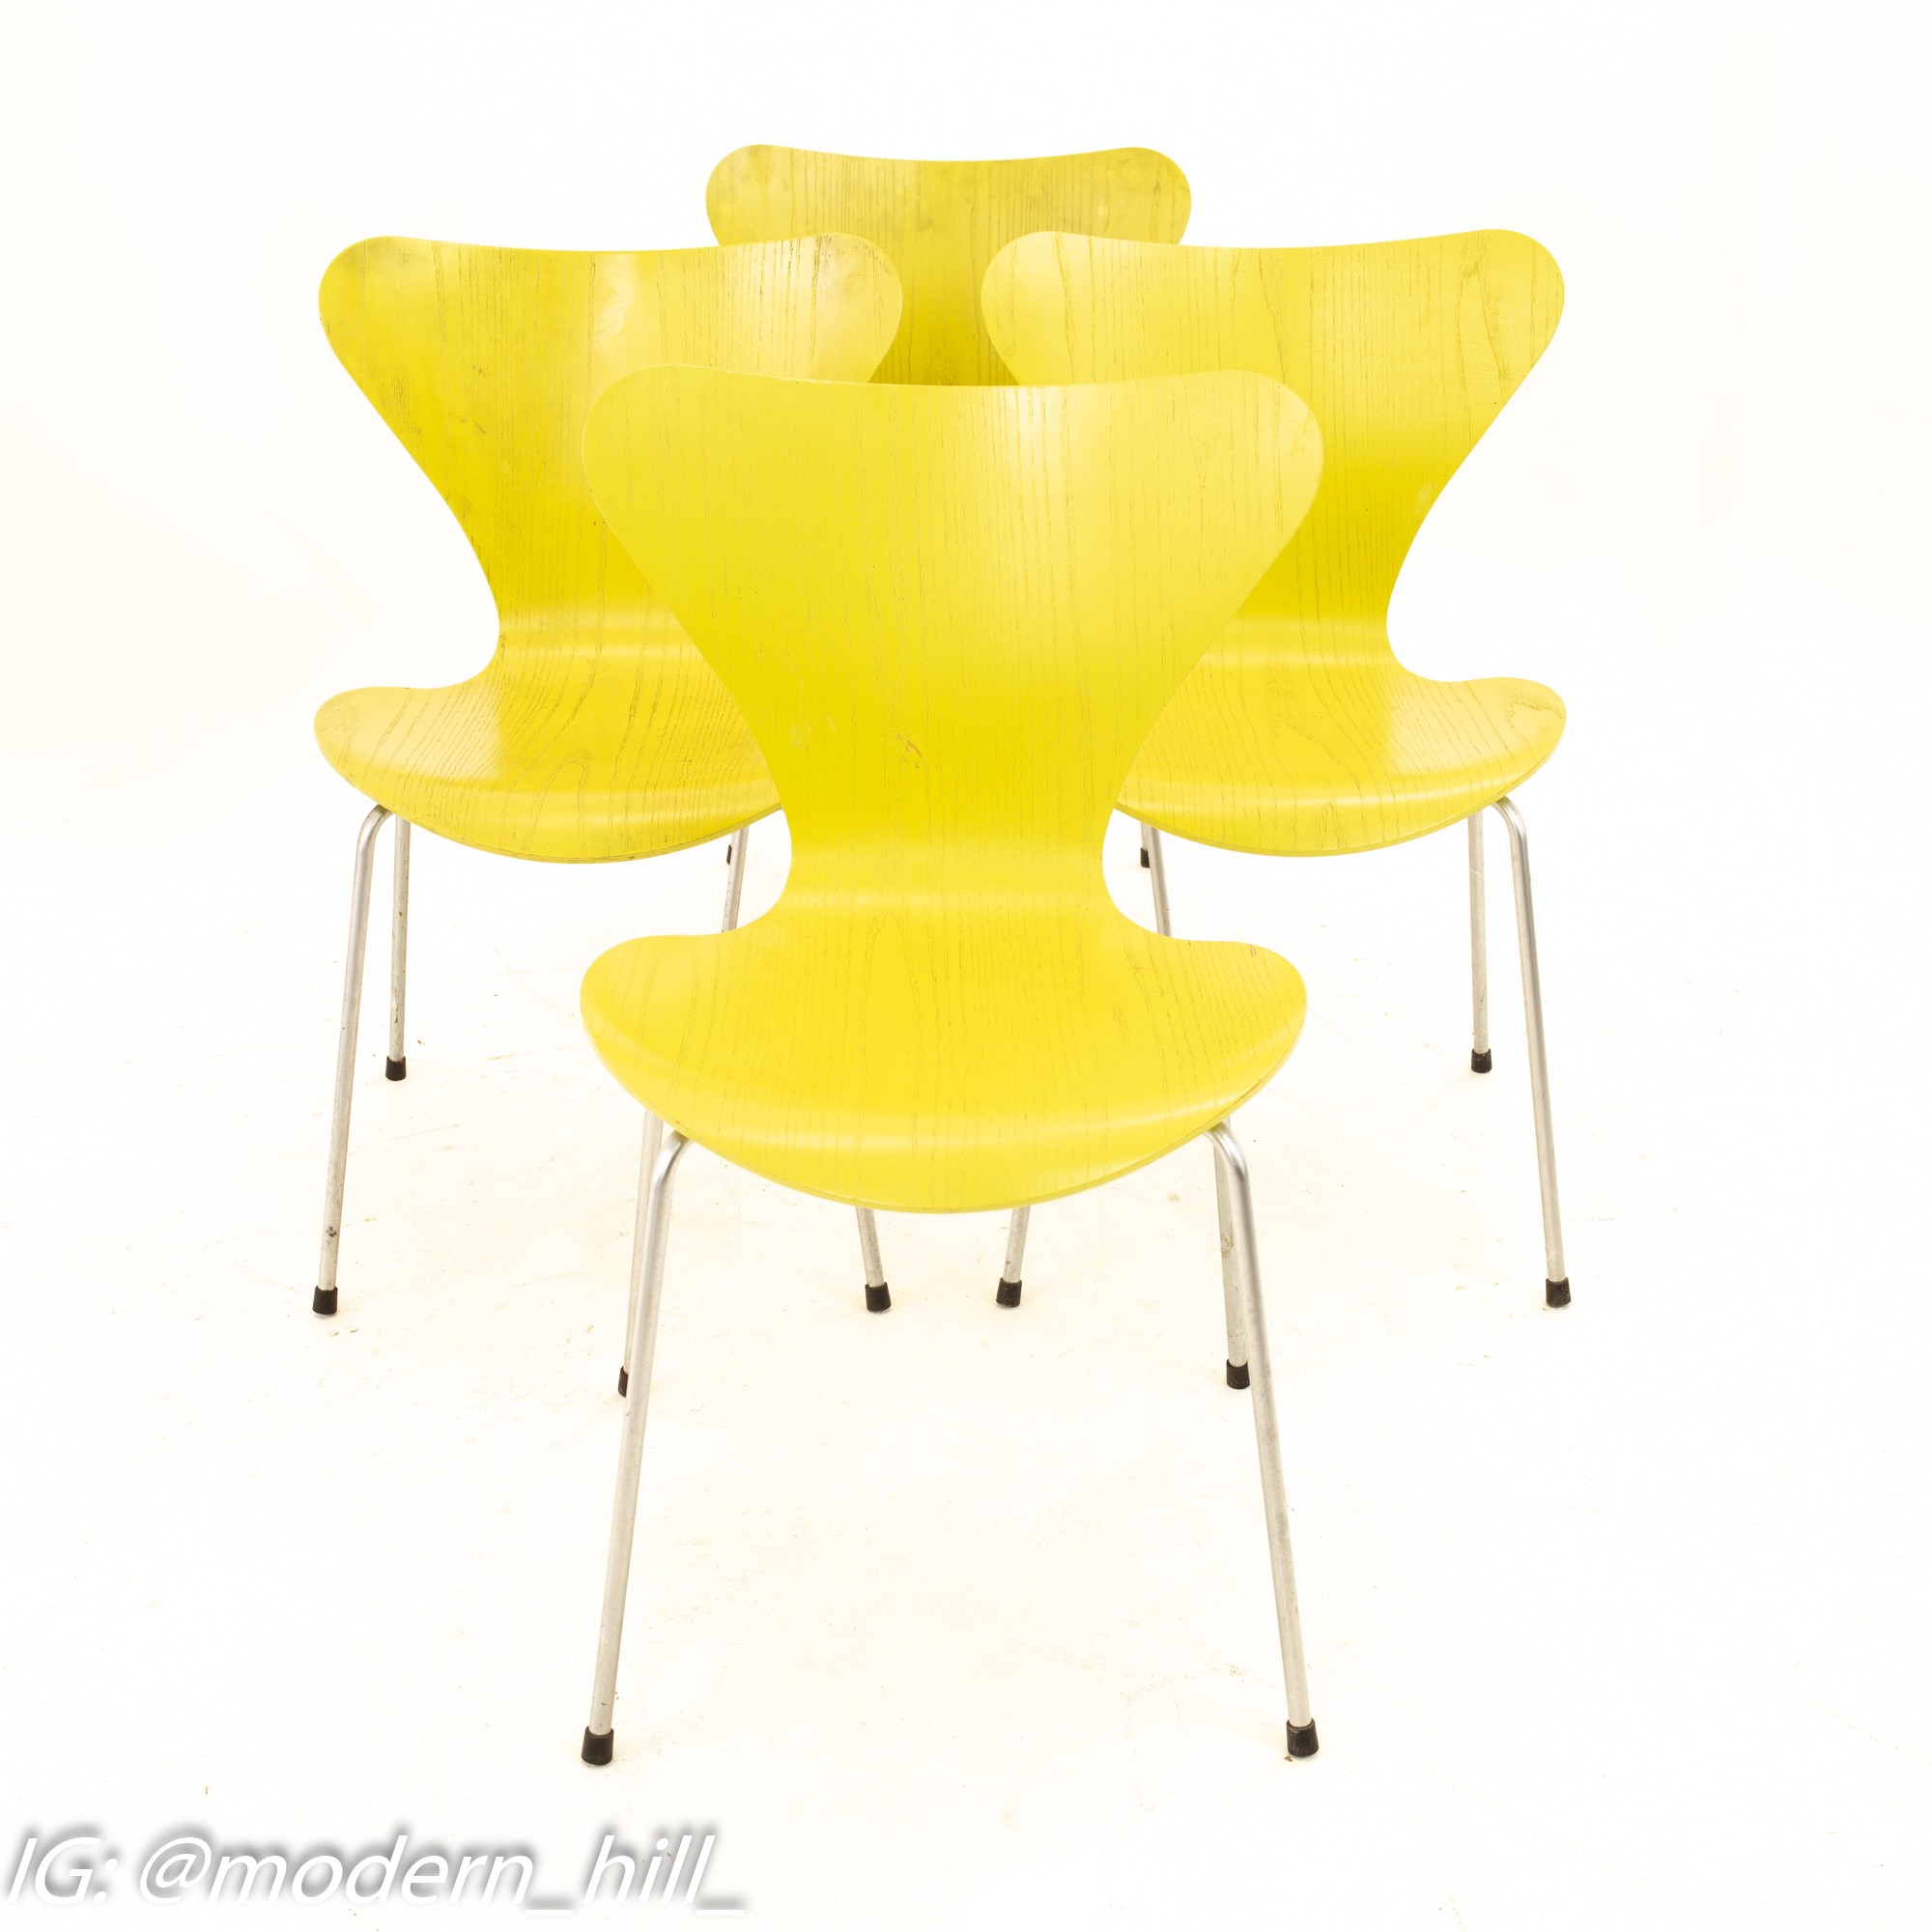 Arne Jacobsen for Fritz Hansen Mid Century Modern Series 7 Chairs - Lime - Set of 4